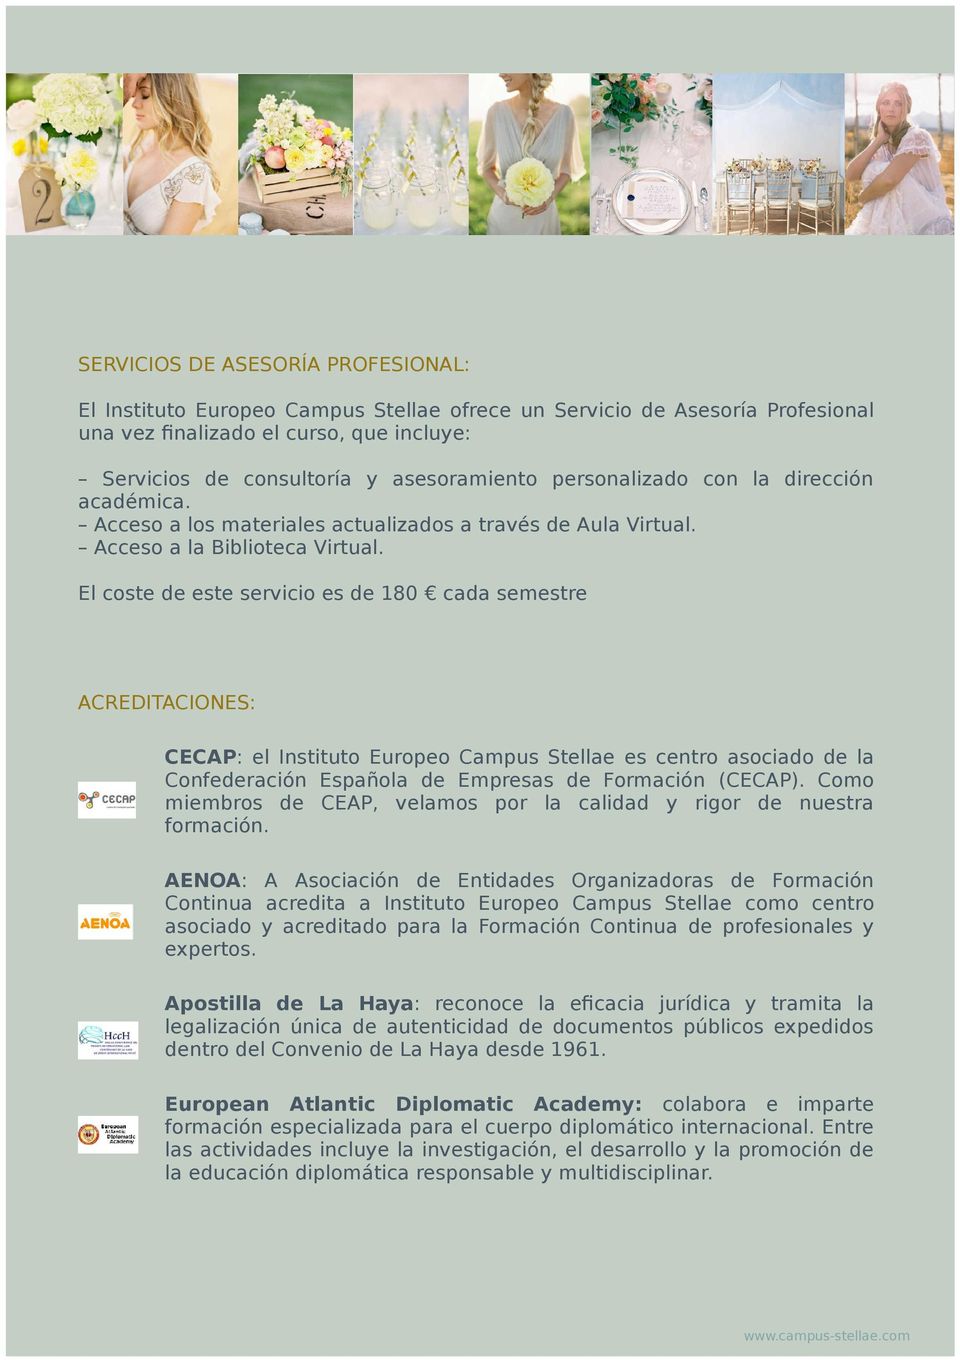 El coste de este servicio es de 180 cada semestre ACREDITACIONES: CECAP: el Instituto Europeo Campus Stellae es centro asociado de la Confederación Española de Empresas de Formación (CECAP).